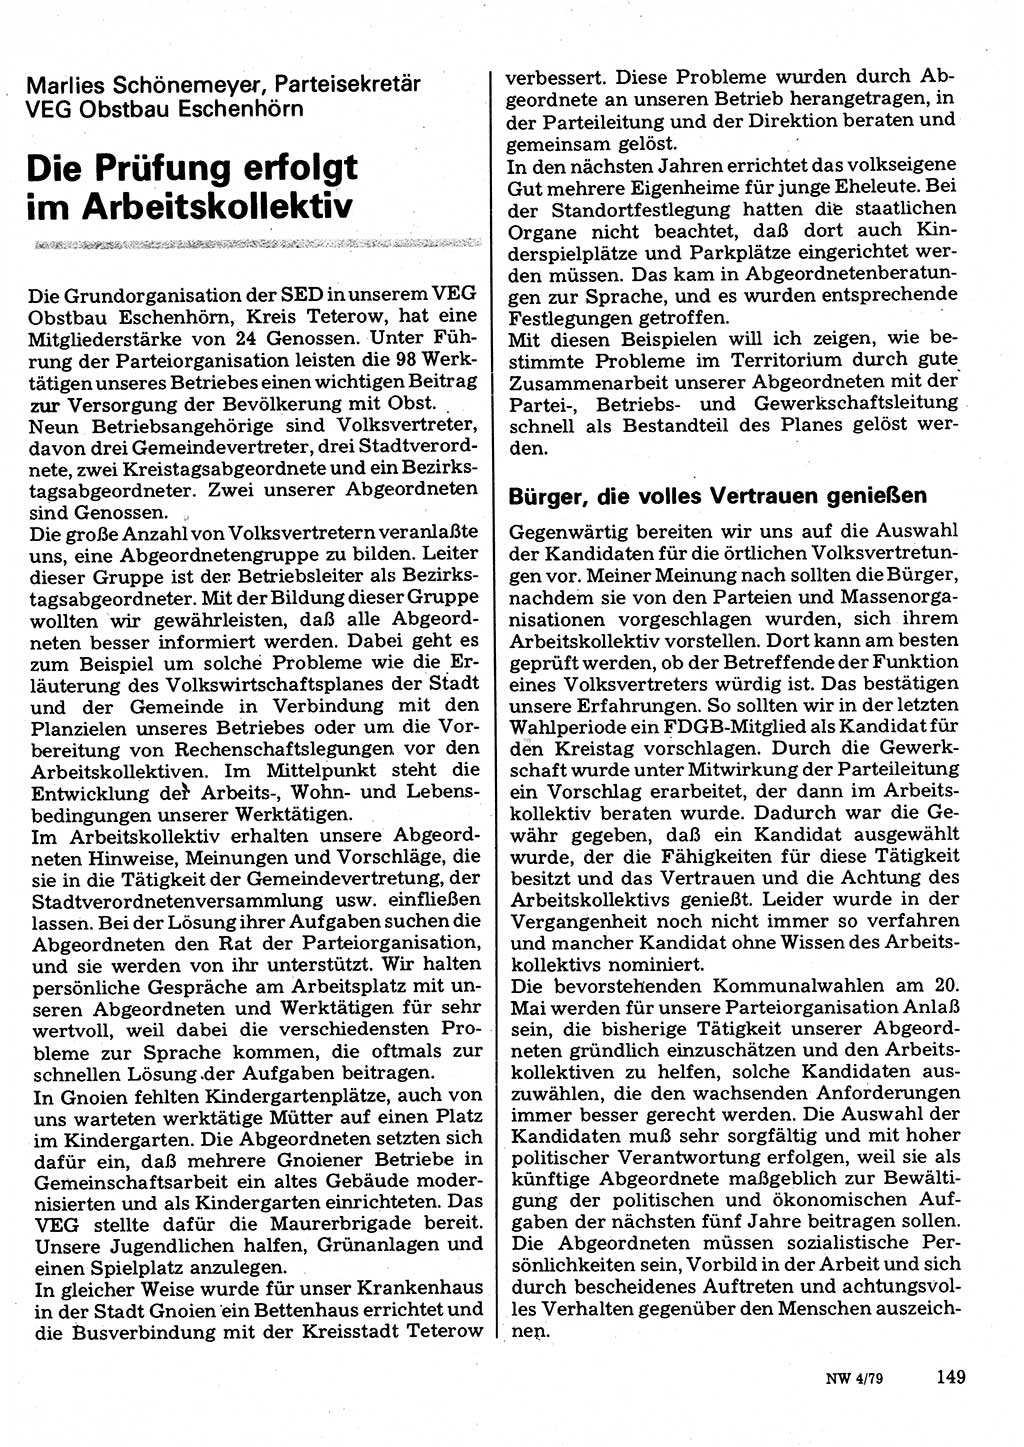 Neuer Weg (NW), Organ des Zentralkomitees (ZK) der SED (Sozialistische Einheitspartei Deutschlands) für Fragen des Parteilebens, 34. Jahrgang [Deutsche Demokratische Republik (DDR)] 1979, Seite 149 (NW ZK SED DDR 1979, S. 149)